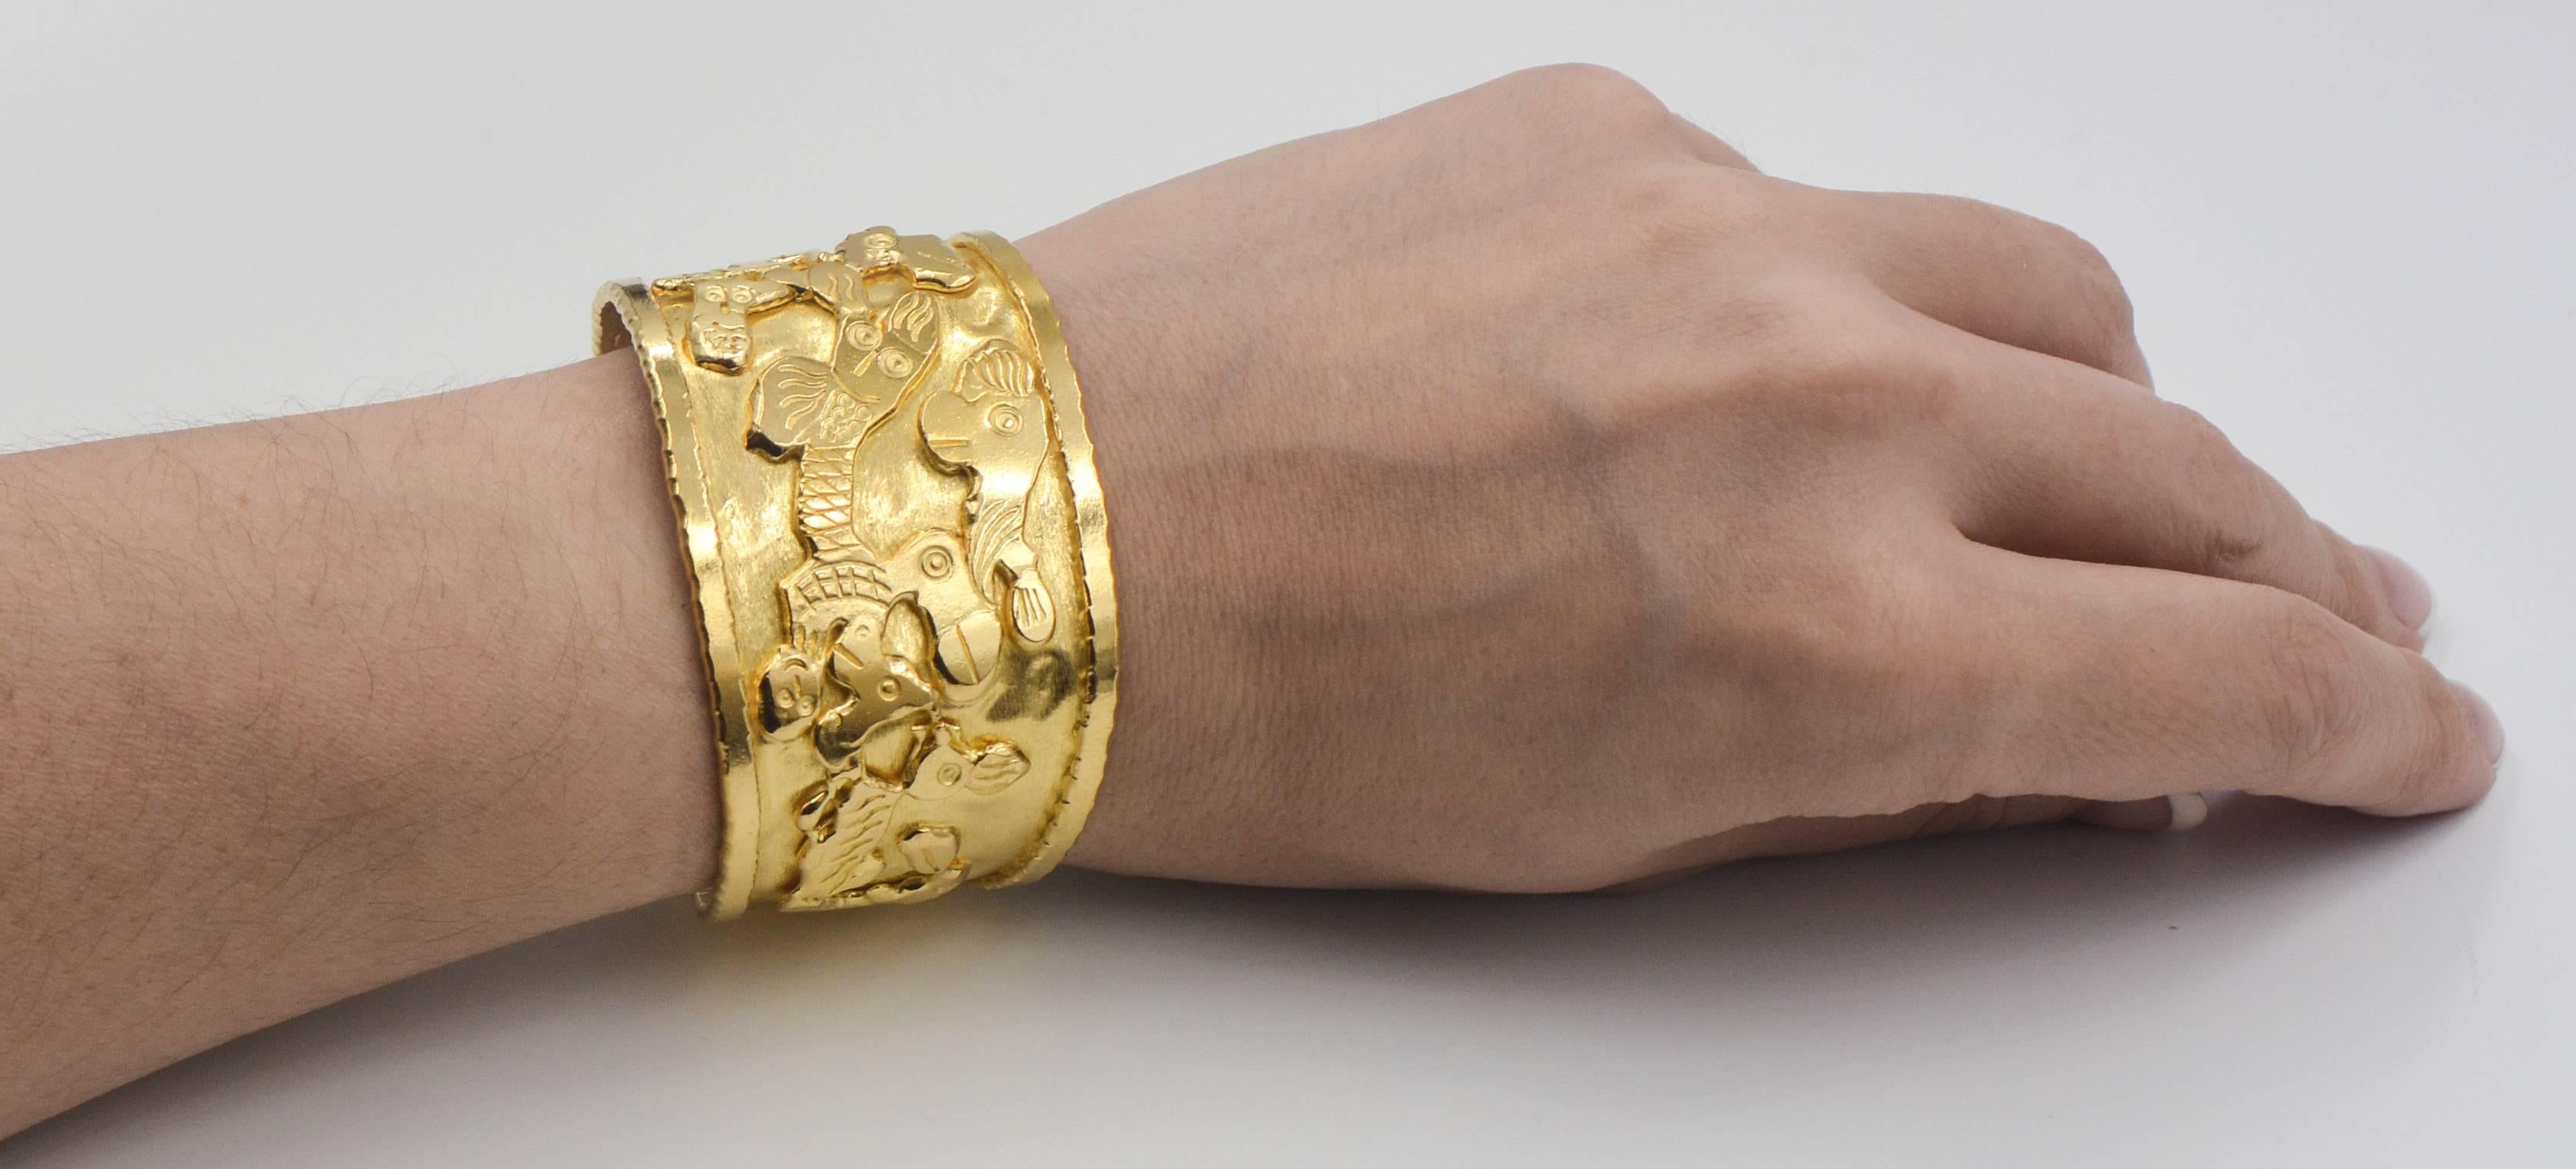 gold wrist cuff bracelet